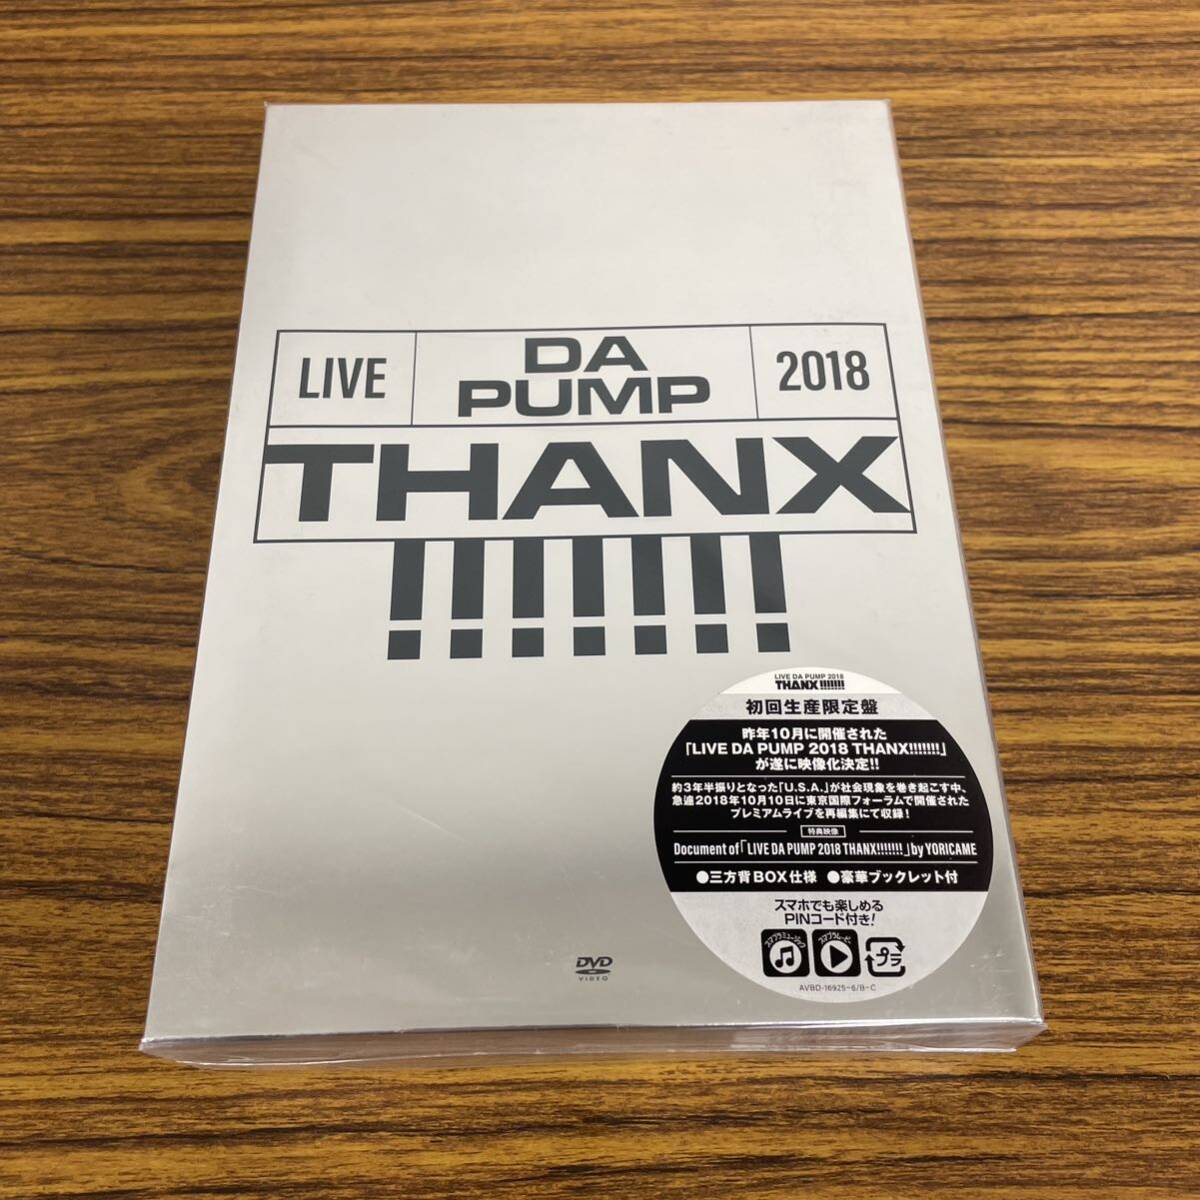 新品☆未開封☆送料無料☆A-43☆DA PUMP☆LIVE DA PUMP 2018 THANX!!!!!!! at 東京国際フォーラム ホールA(DVD2枚+CD2枚)初回生産限定盤_画像1